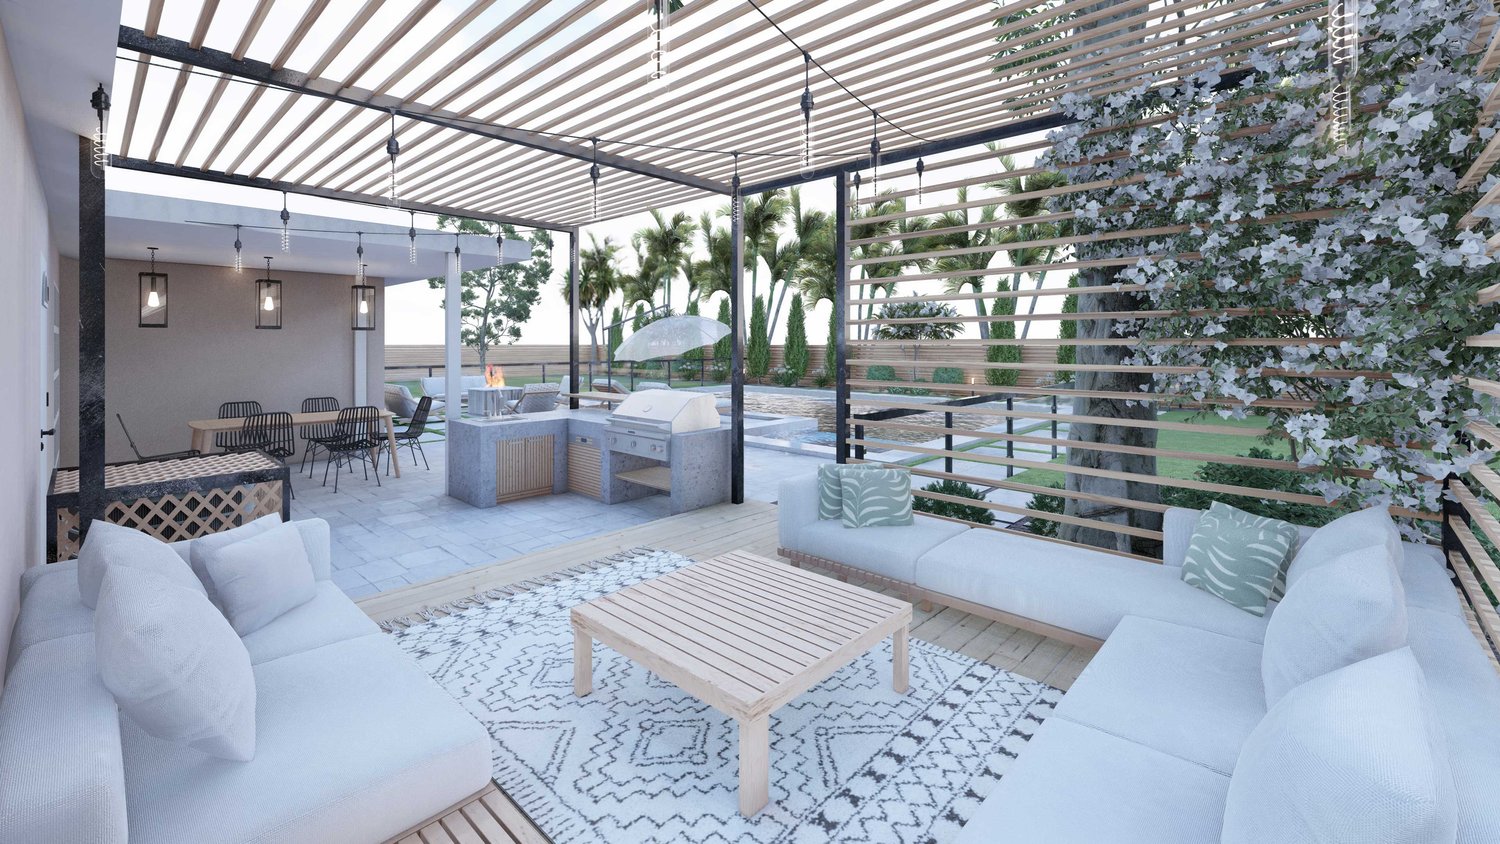 Miami backyard patio and outdoor kitchen with trellis